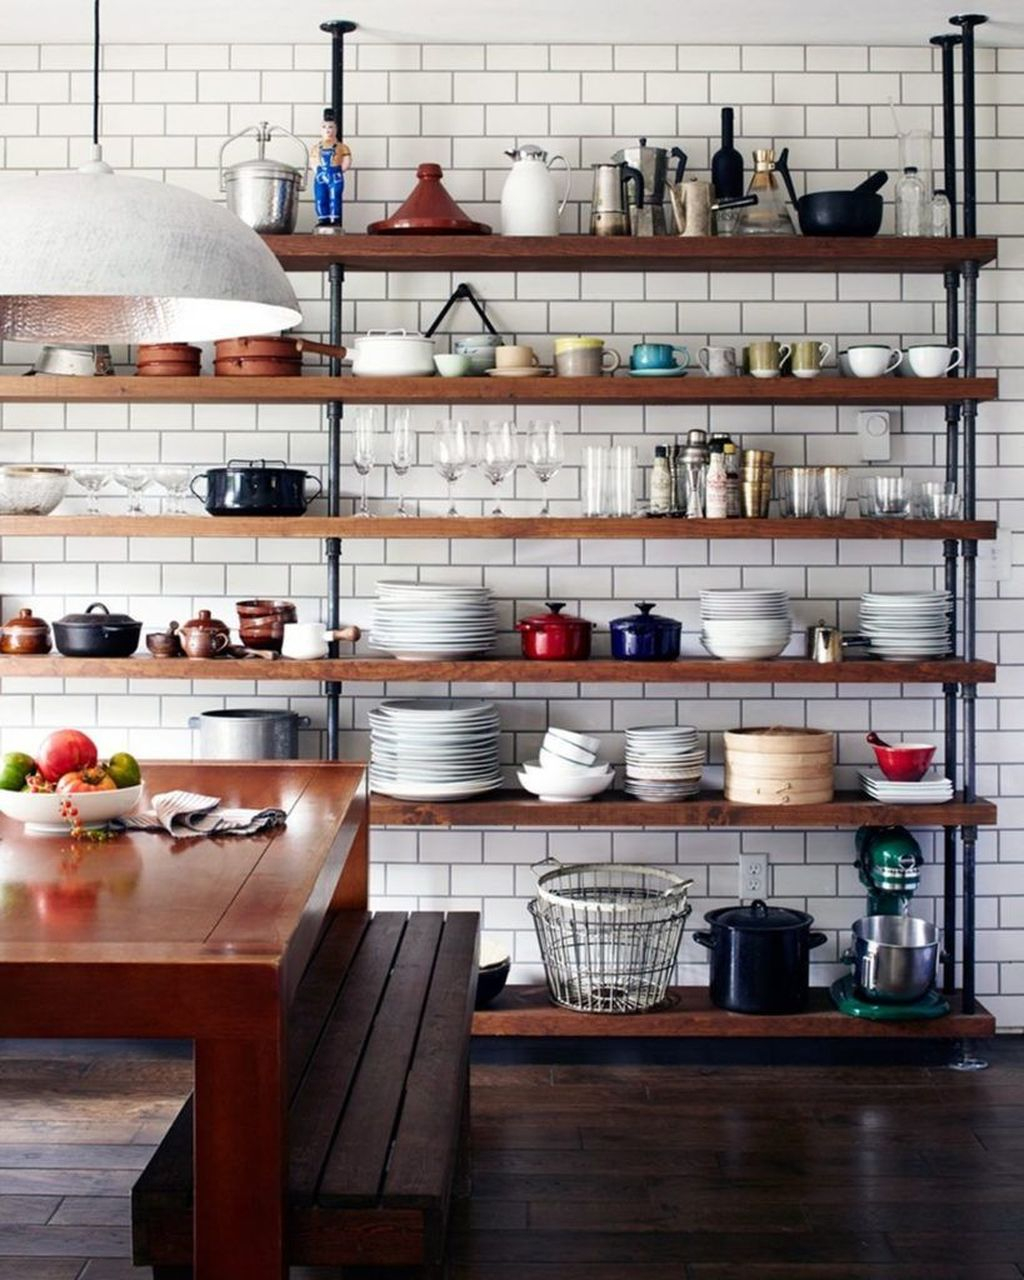 Wonderful Industrial Kitchen Shelf Design Ideas To Organize Your Kitchen16